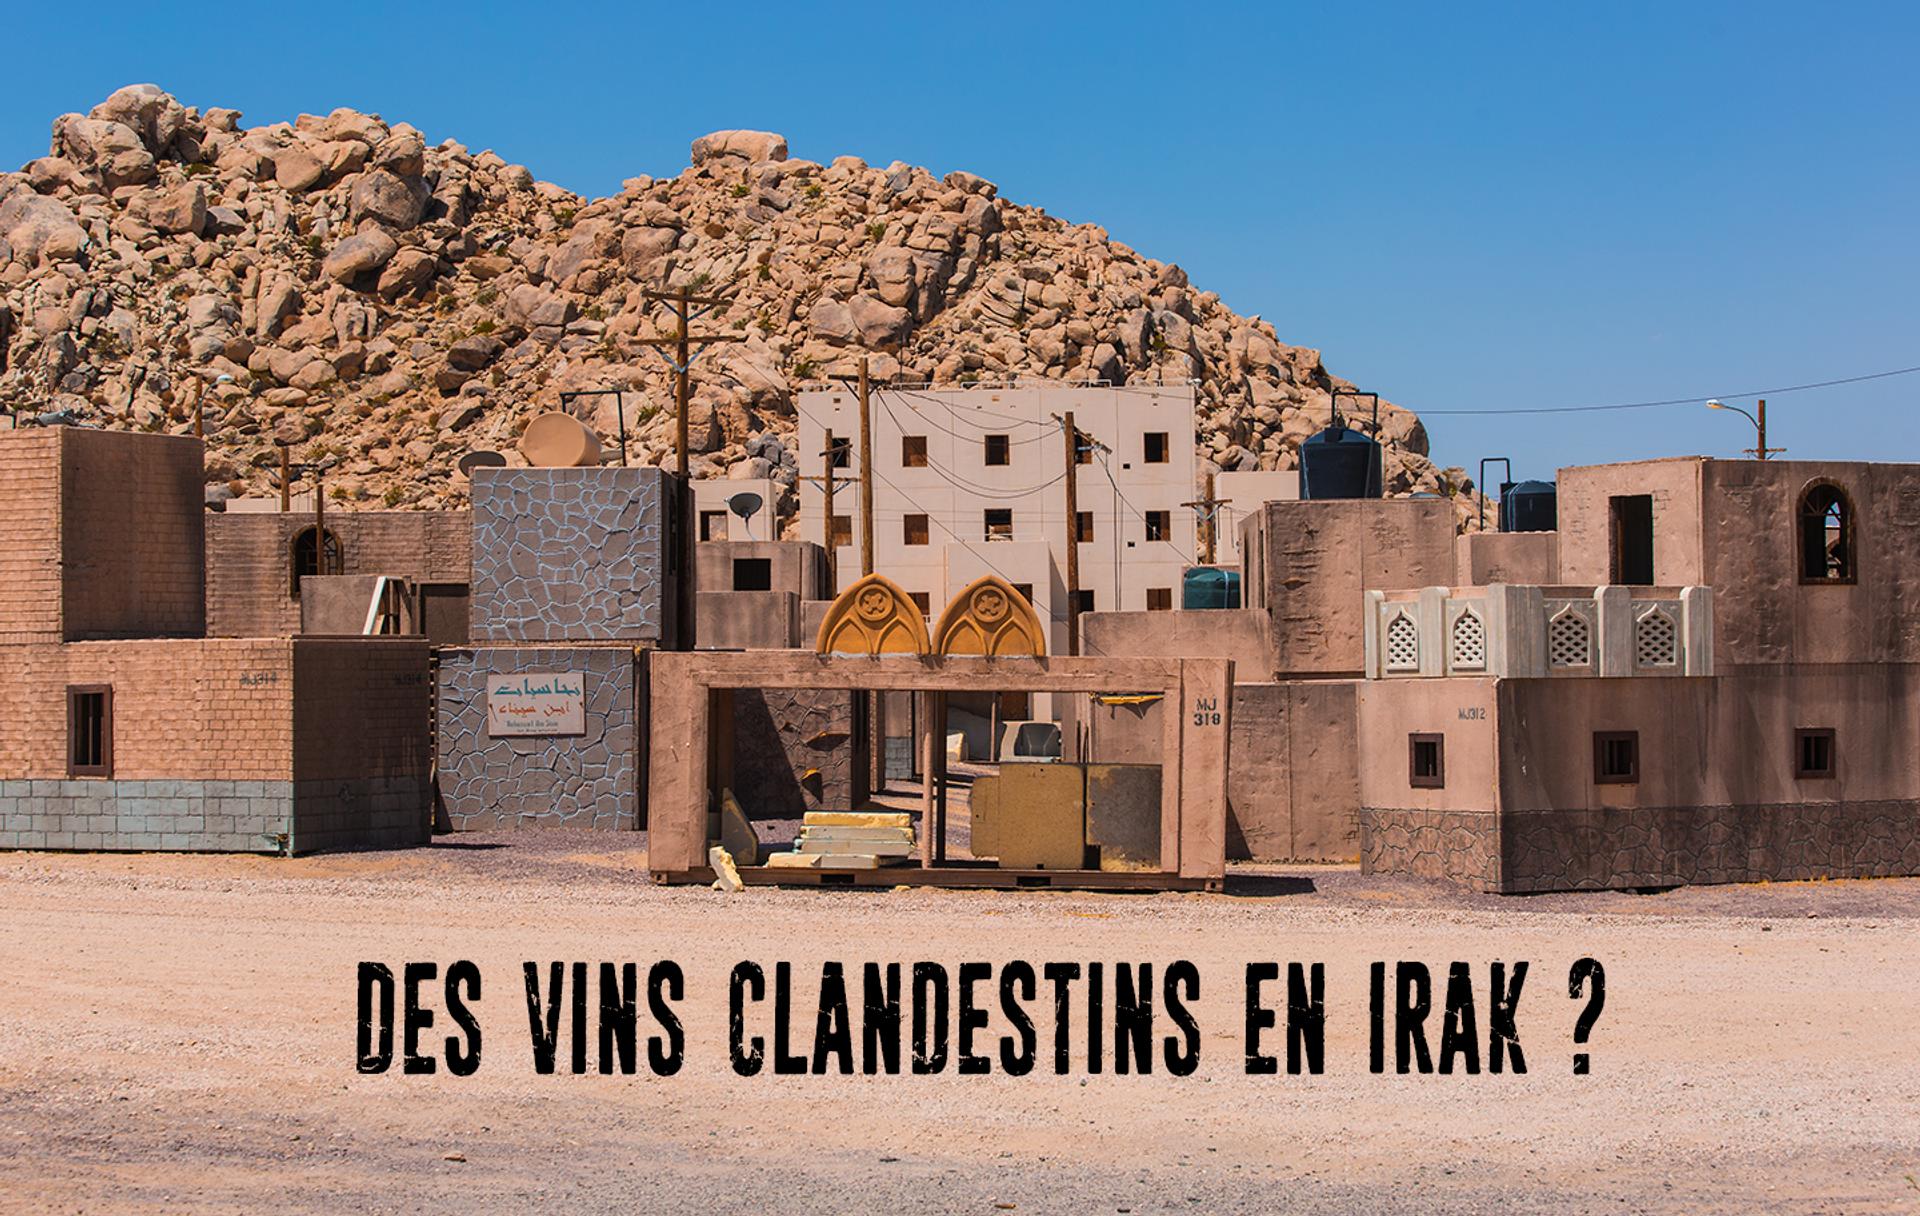 Des vins clandestins en Irak ?